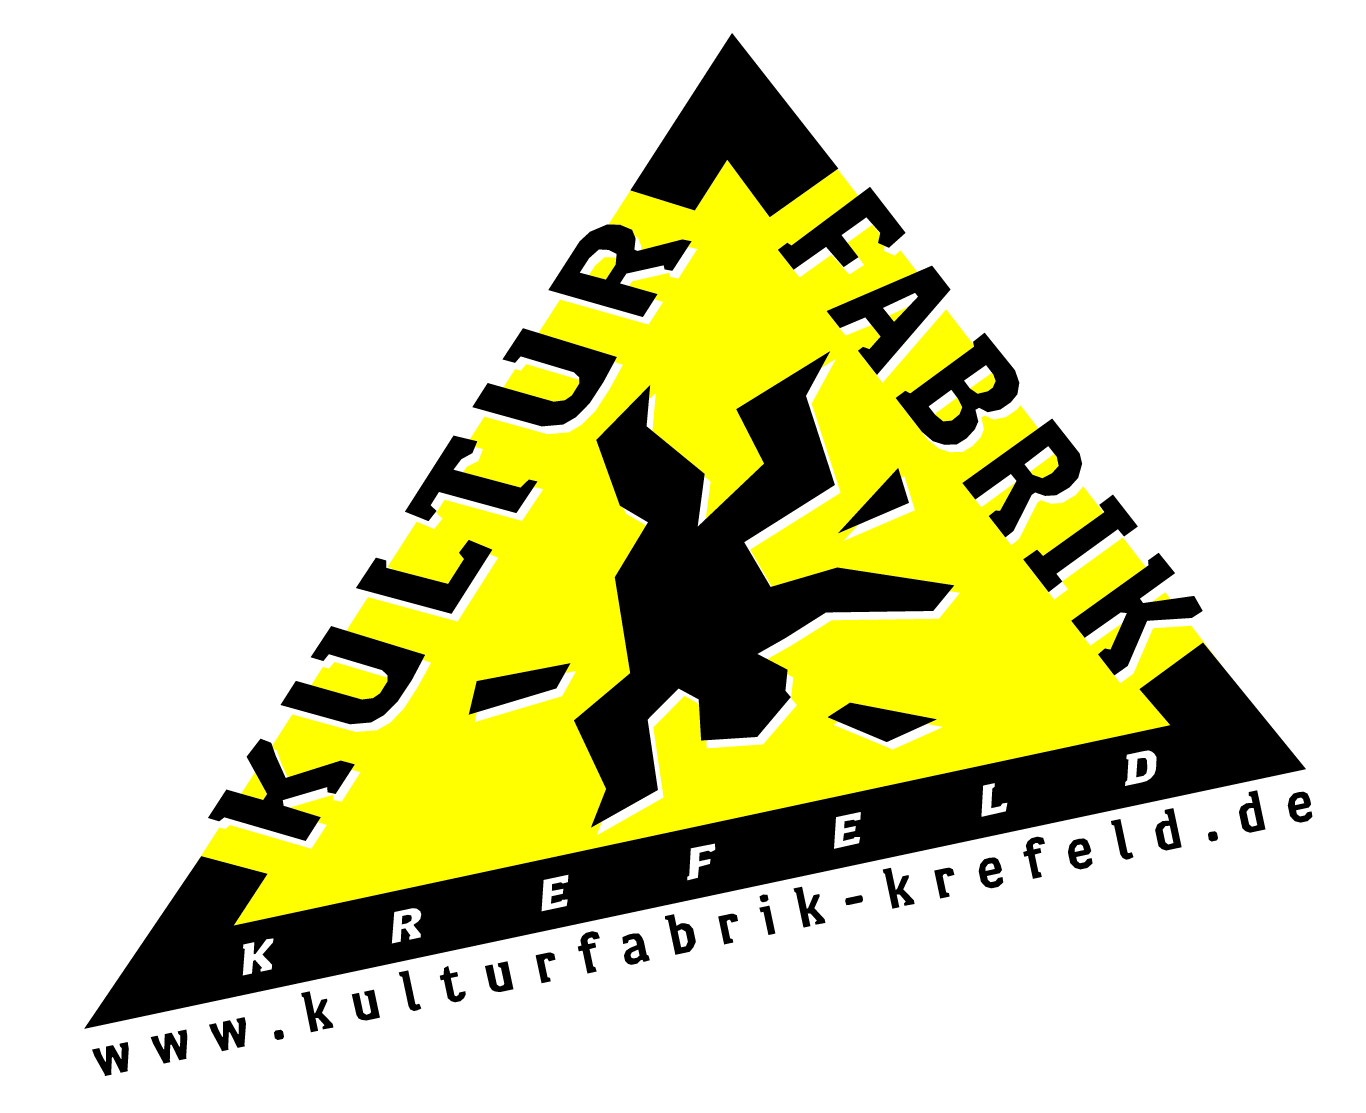 KuFa Krefeld Merchandise